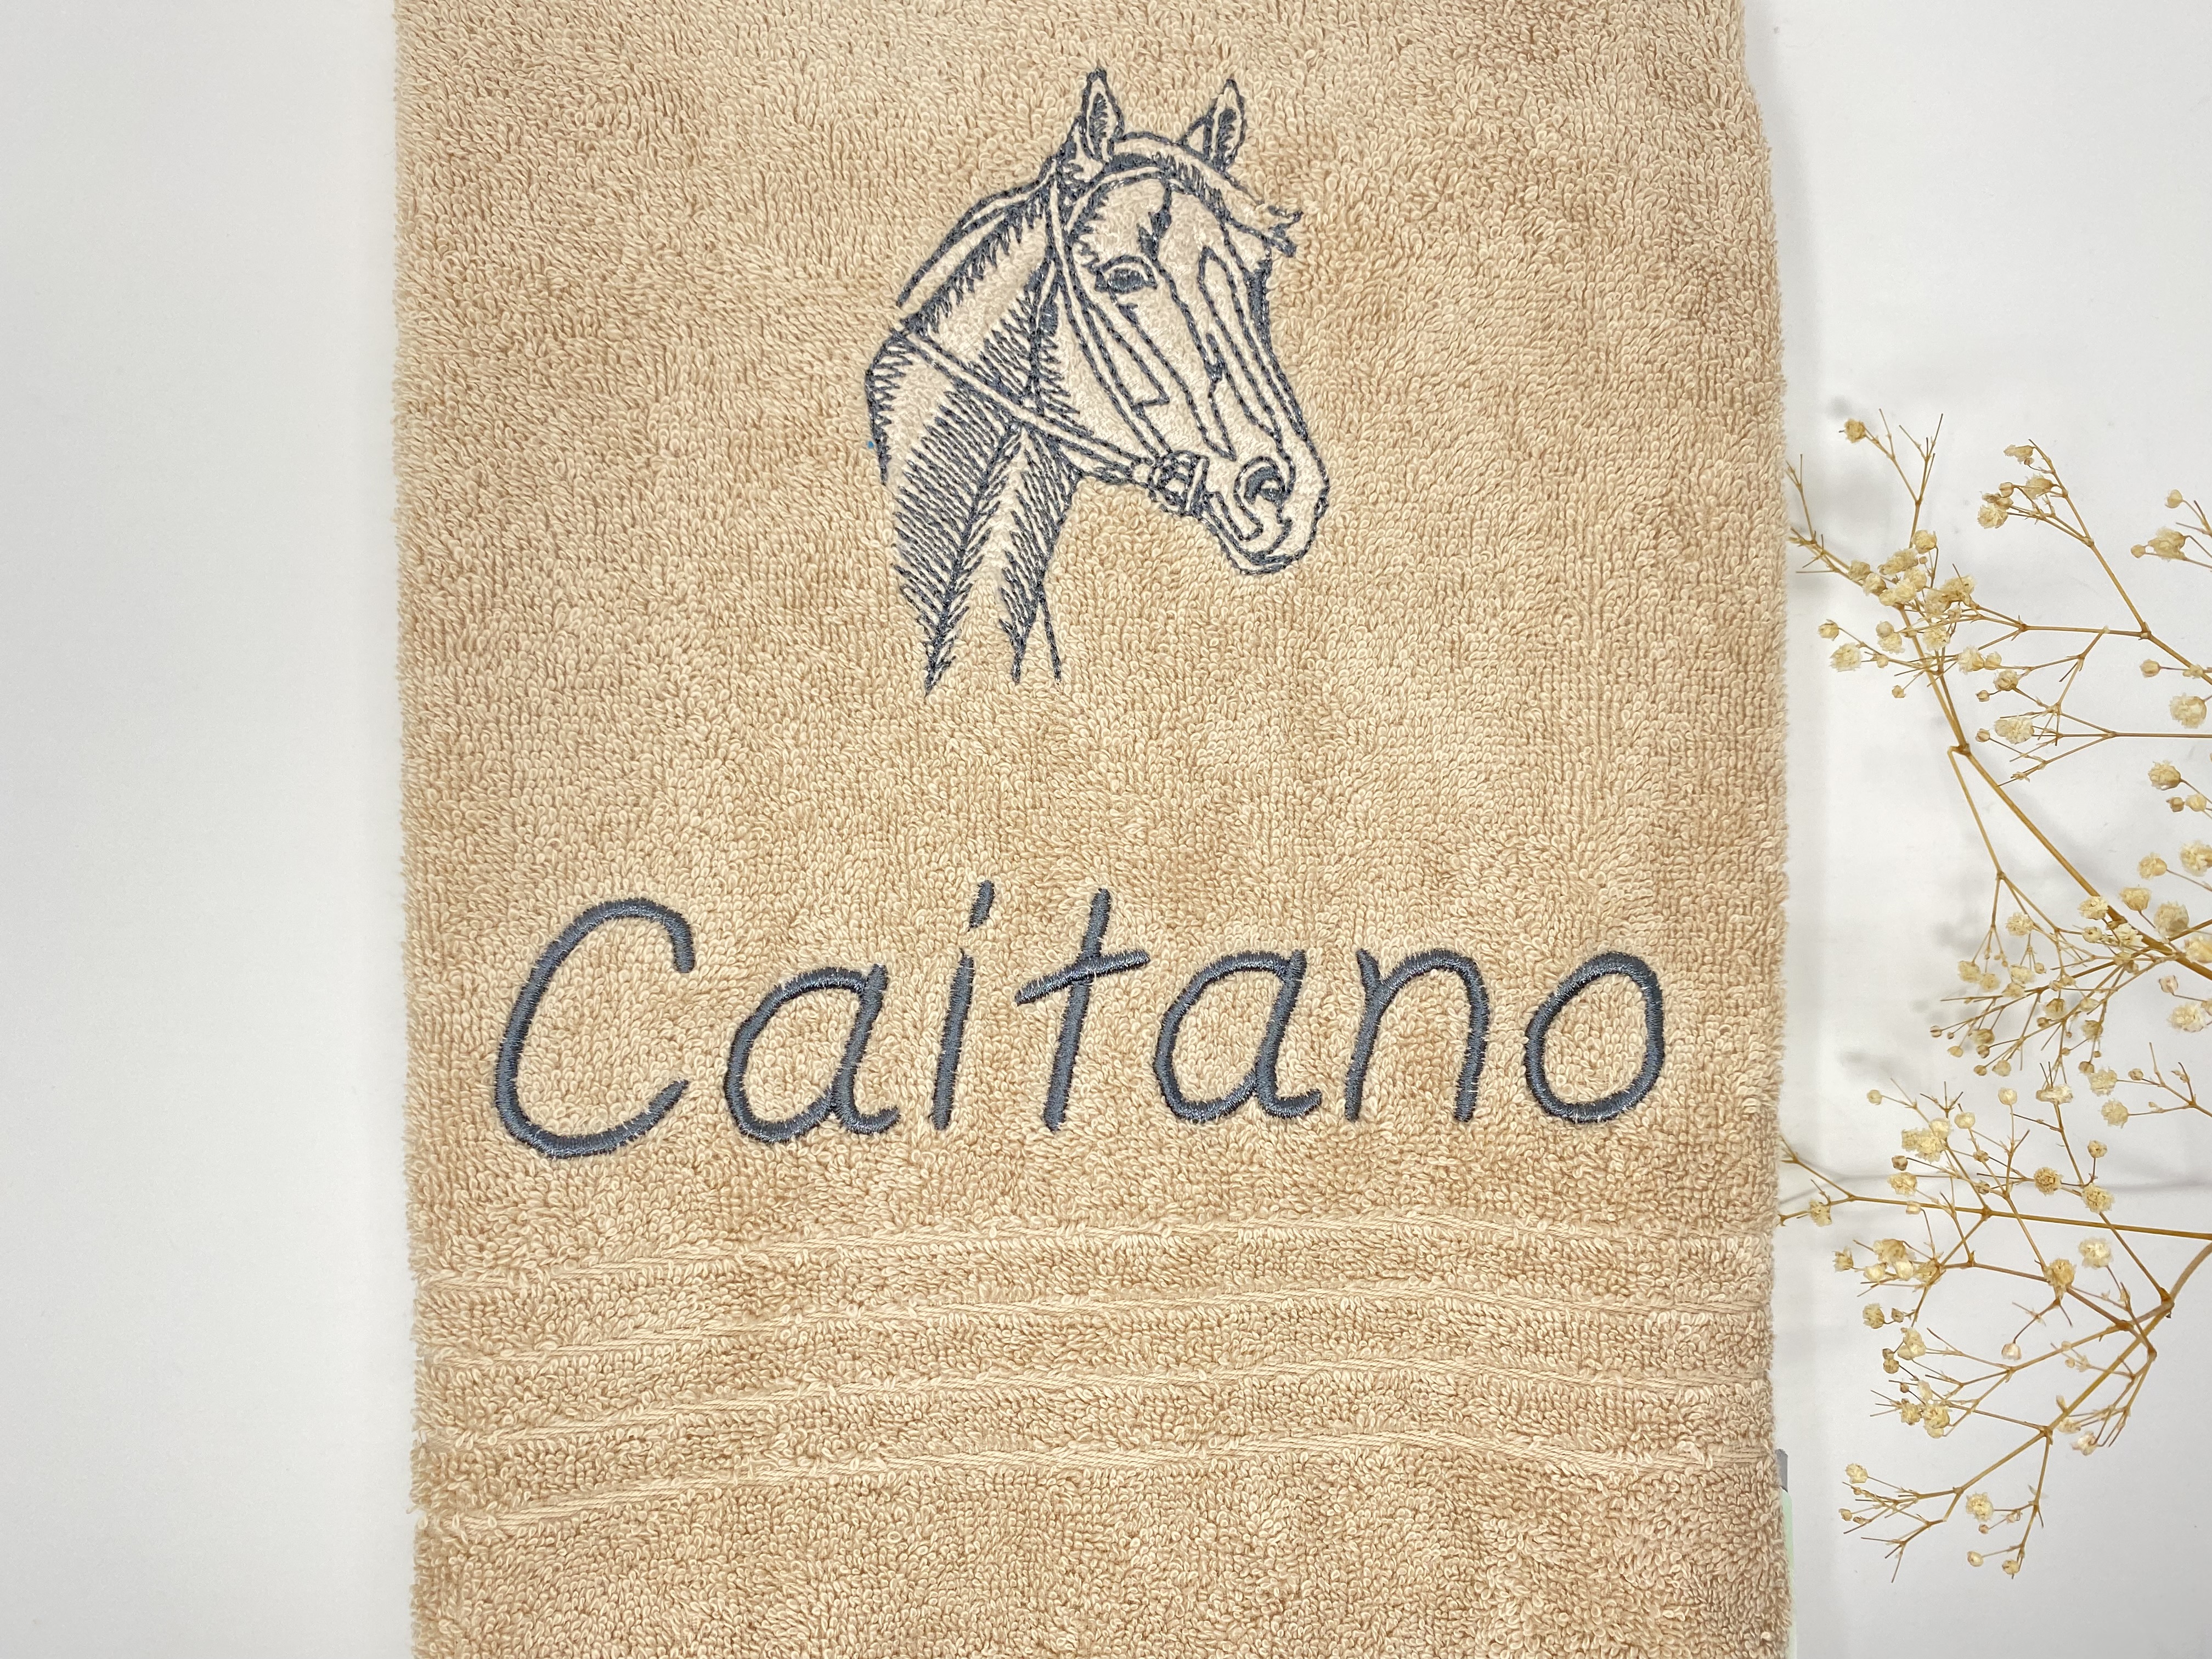 Pferd 09 Pferde Handtuch Duschtuch Stickerei & Personalisierung Super Qualität 